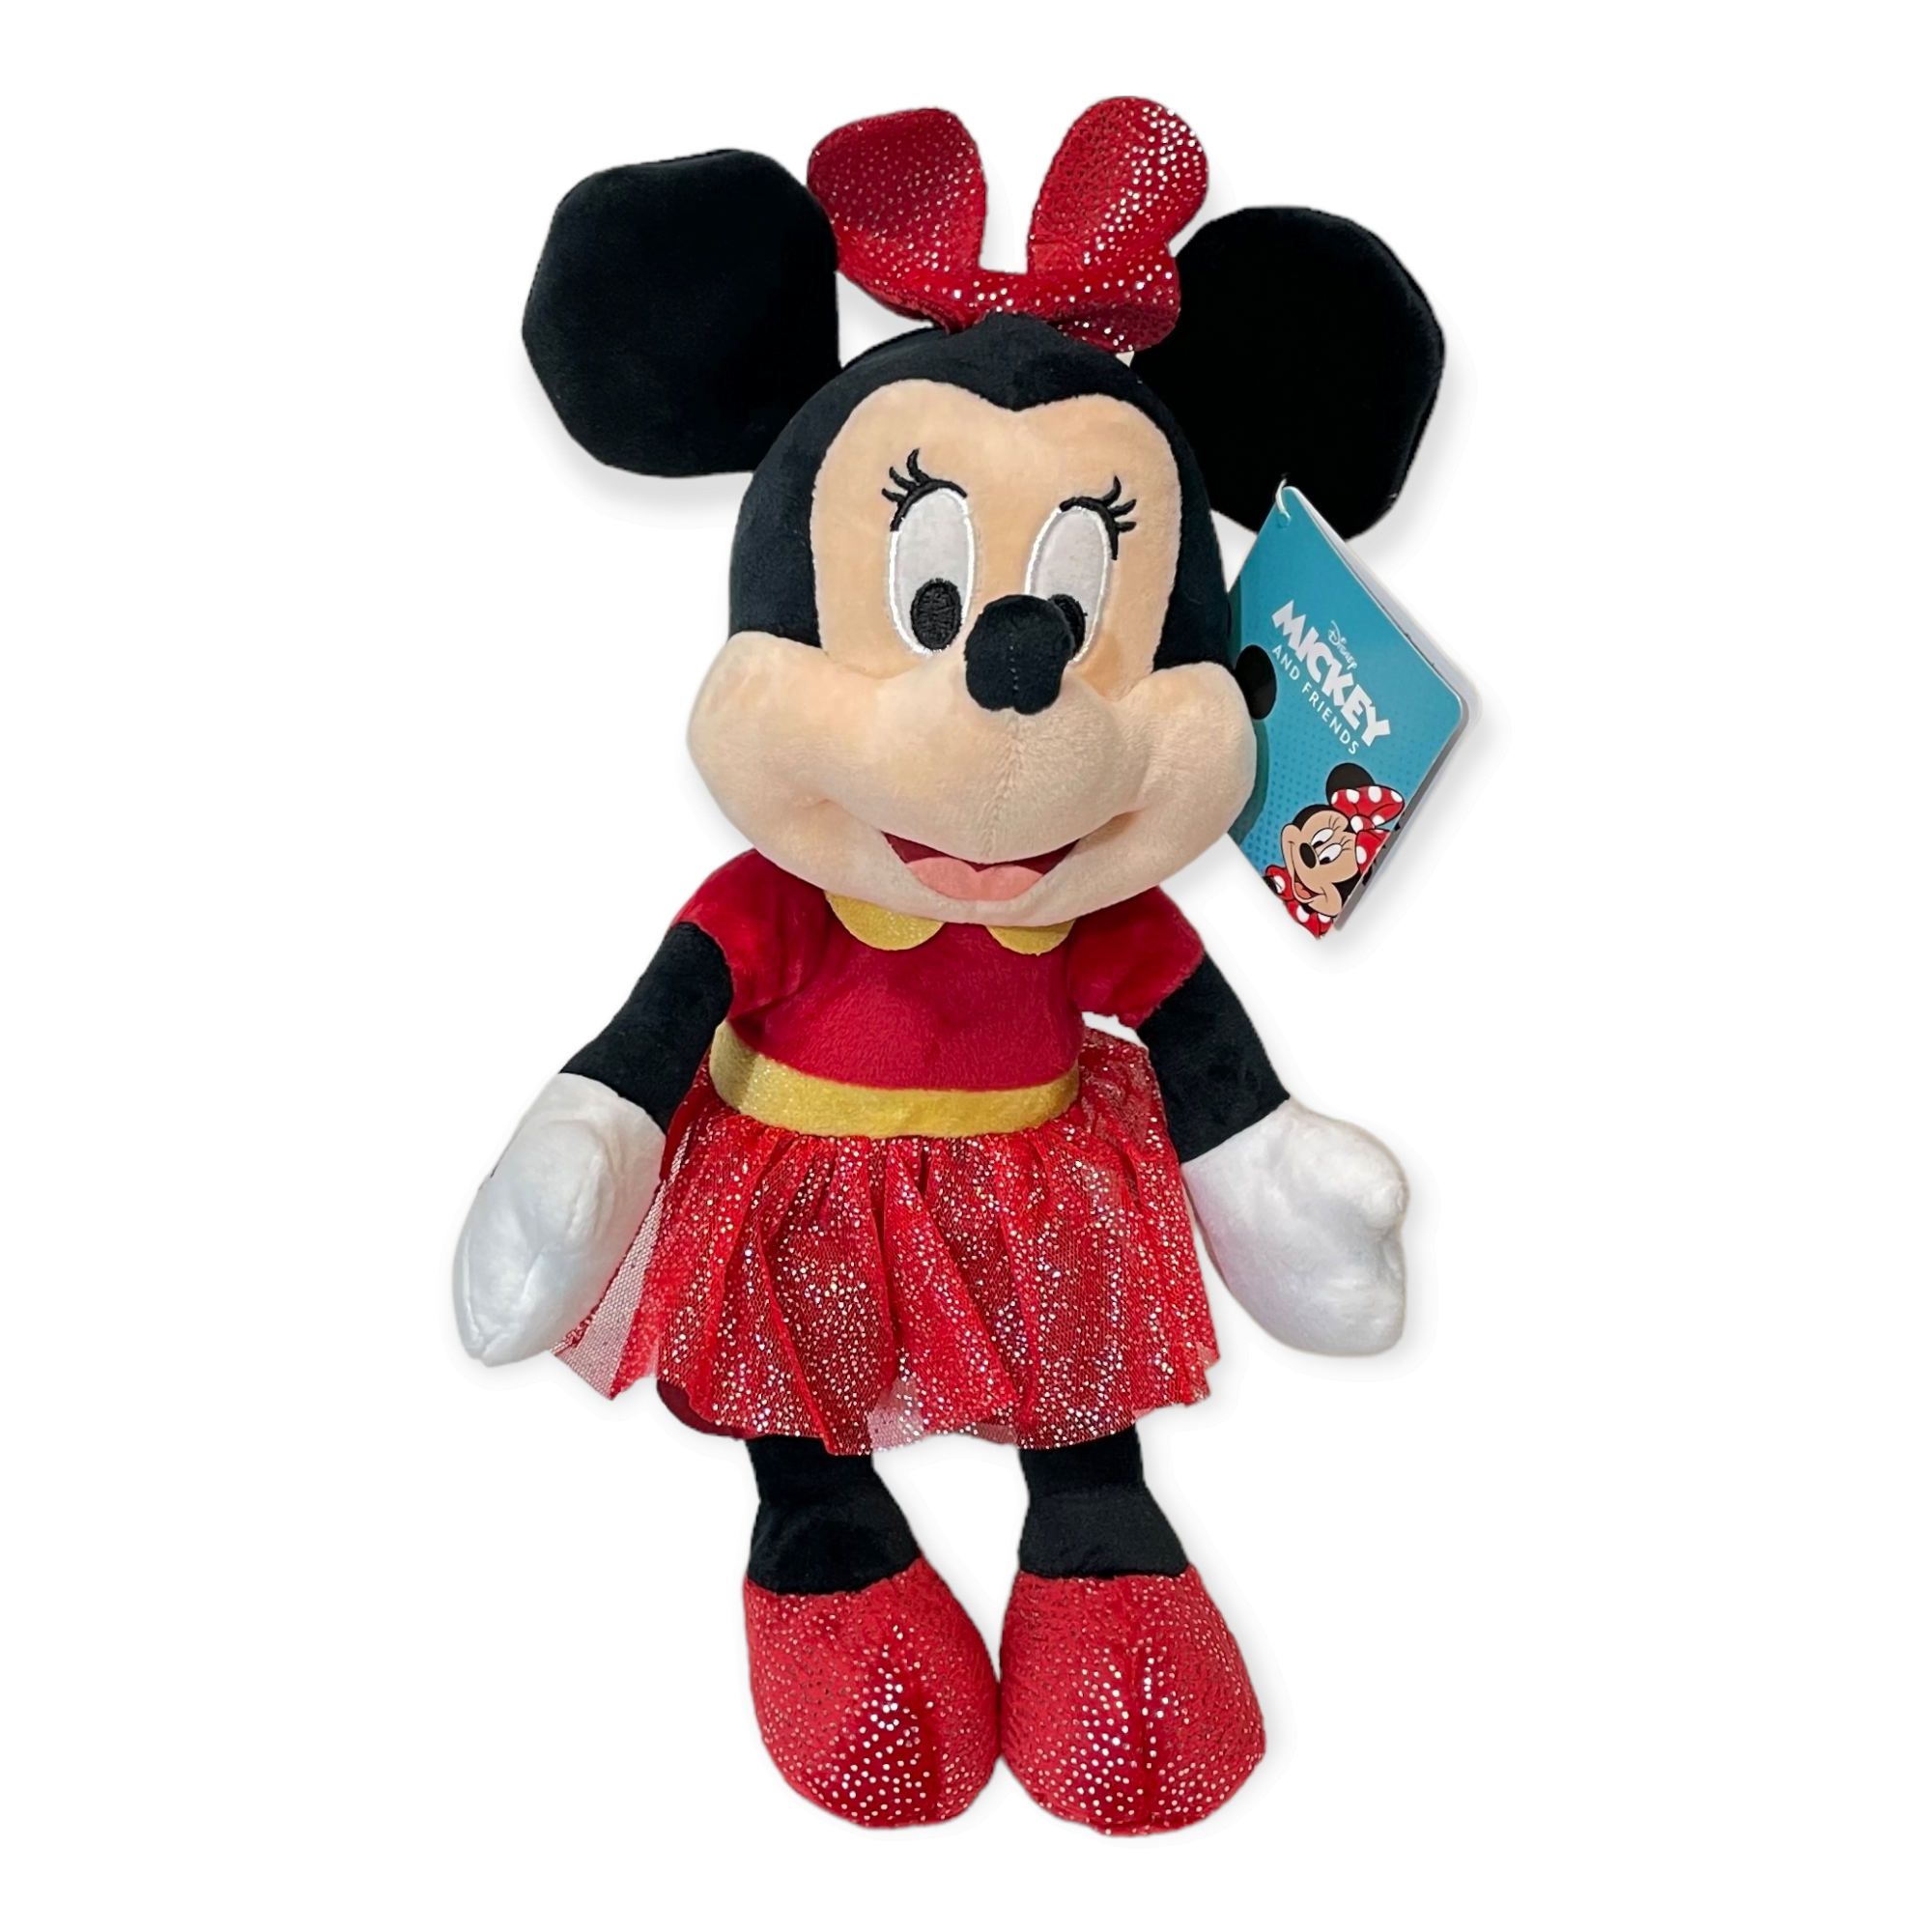 Se Minnie Mouse Sparkley Disney 25 Cm hos Plysdyr.dk